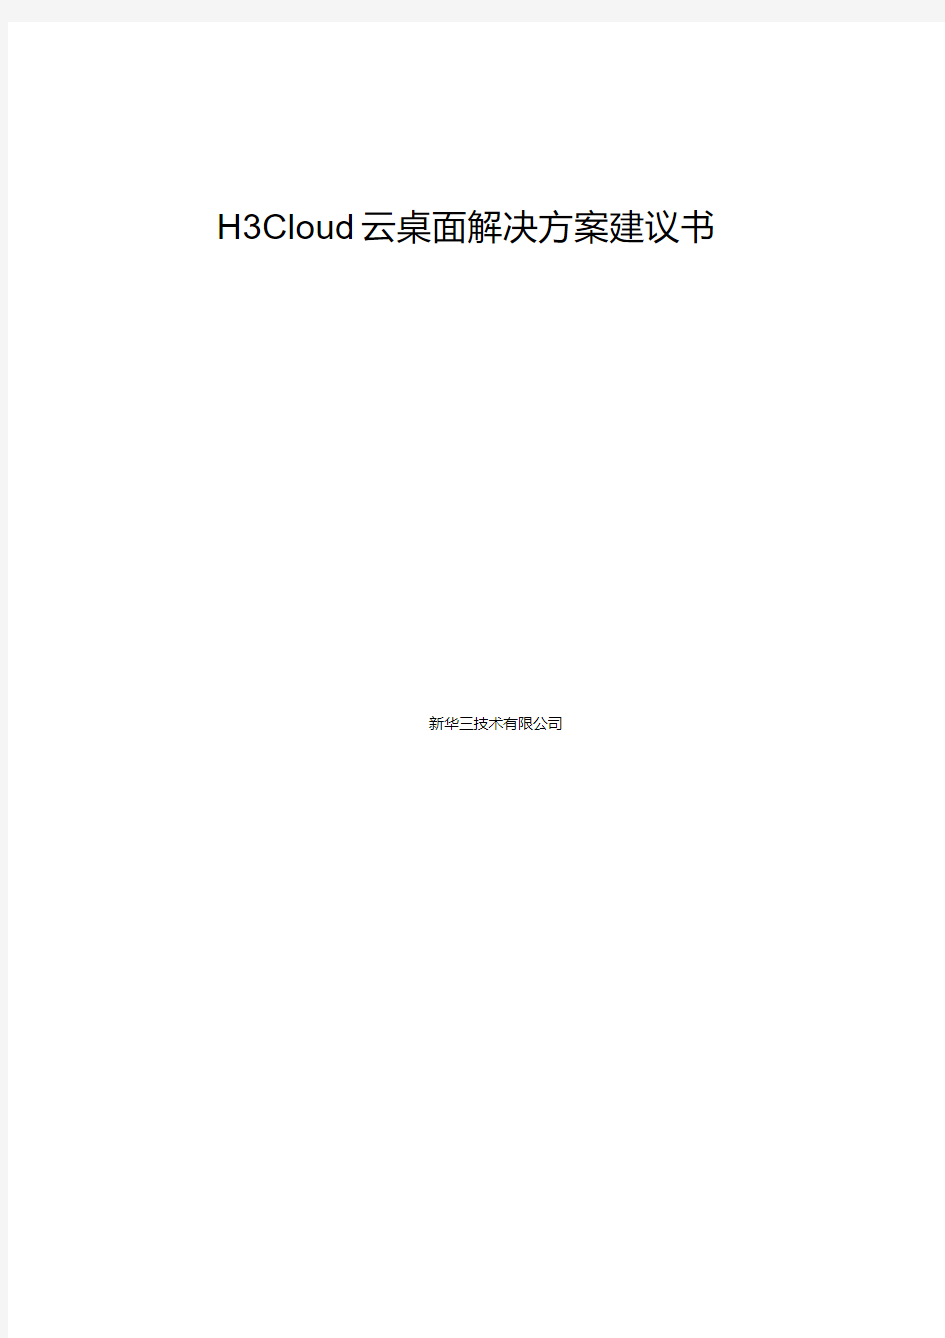 H3Cloud云桌面解决方案建议书(20200515181140)